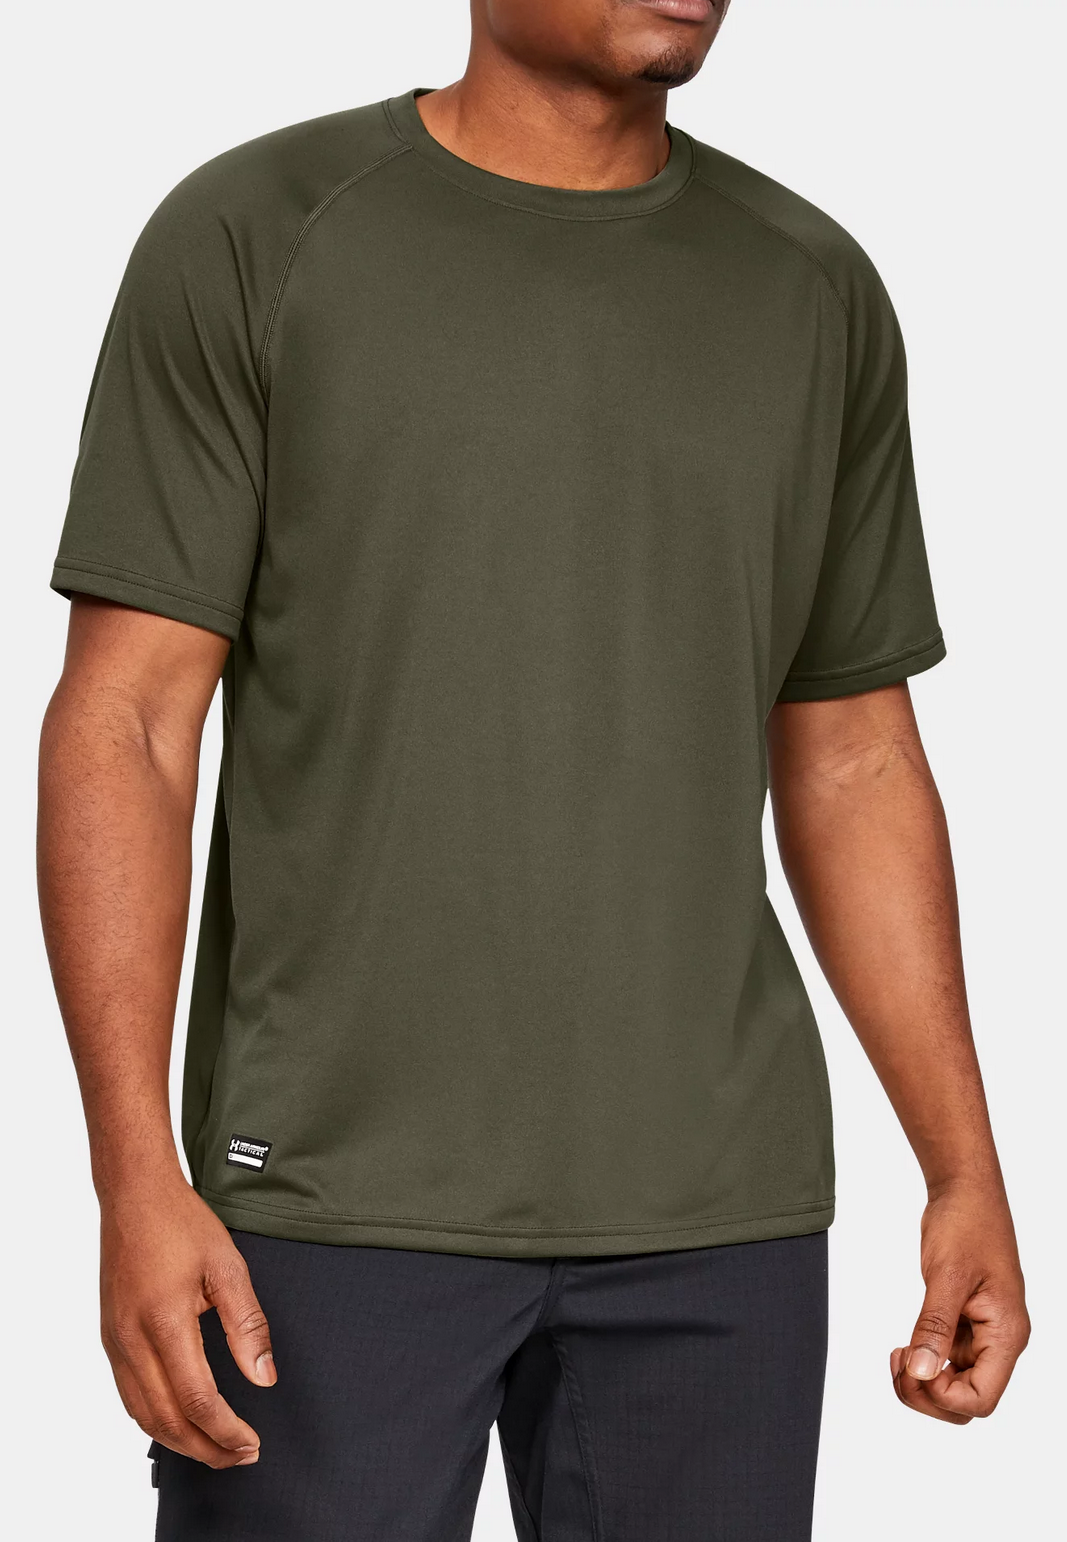 Under Armour - Tactical Tech Short Sleeve T-Shirt